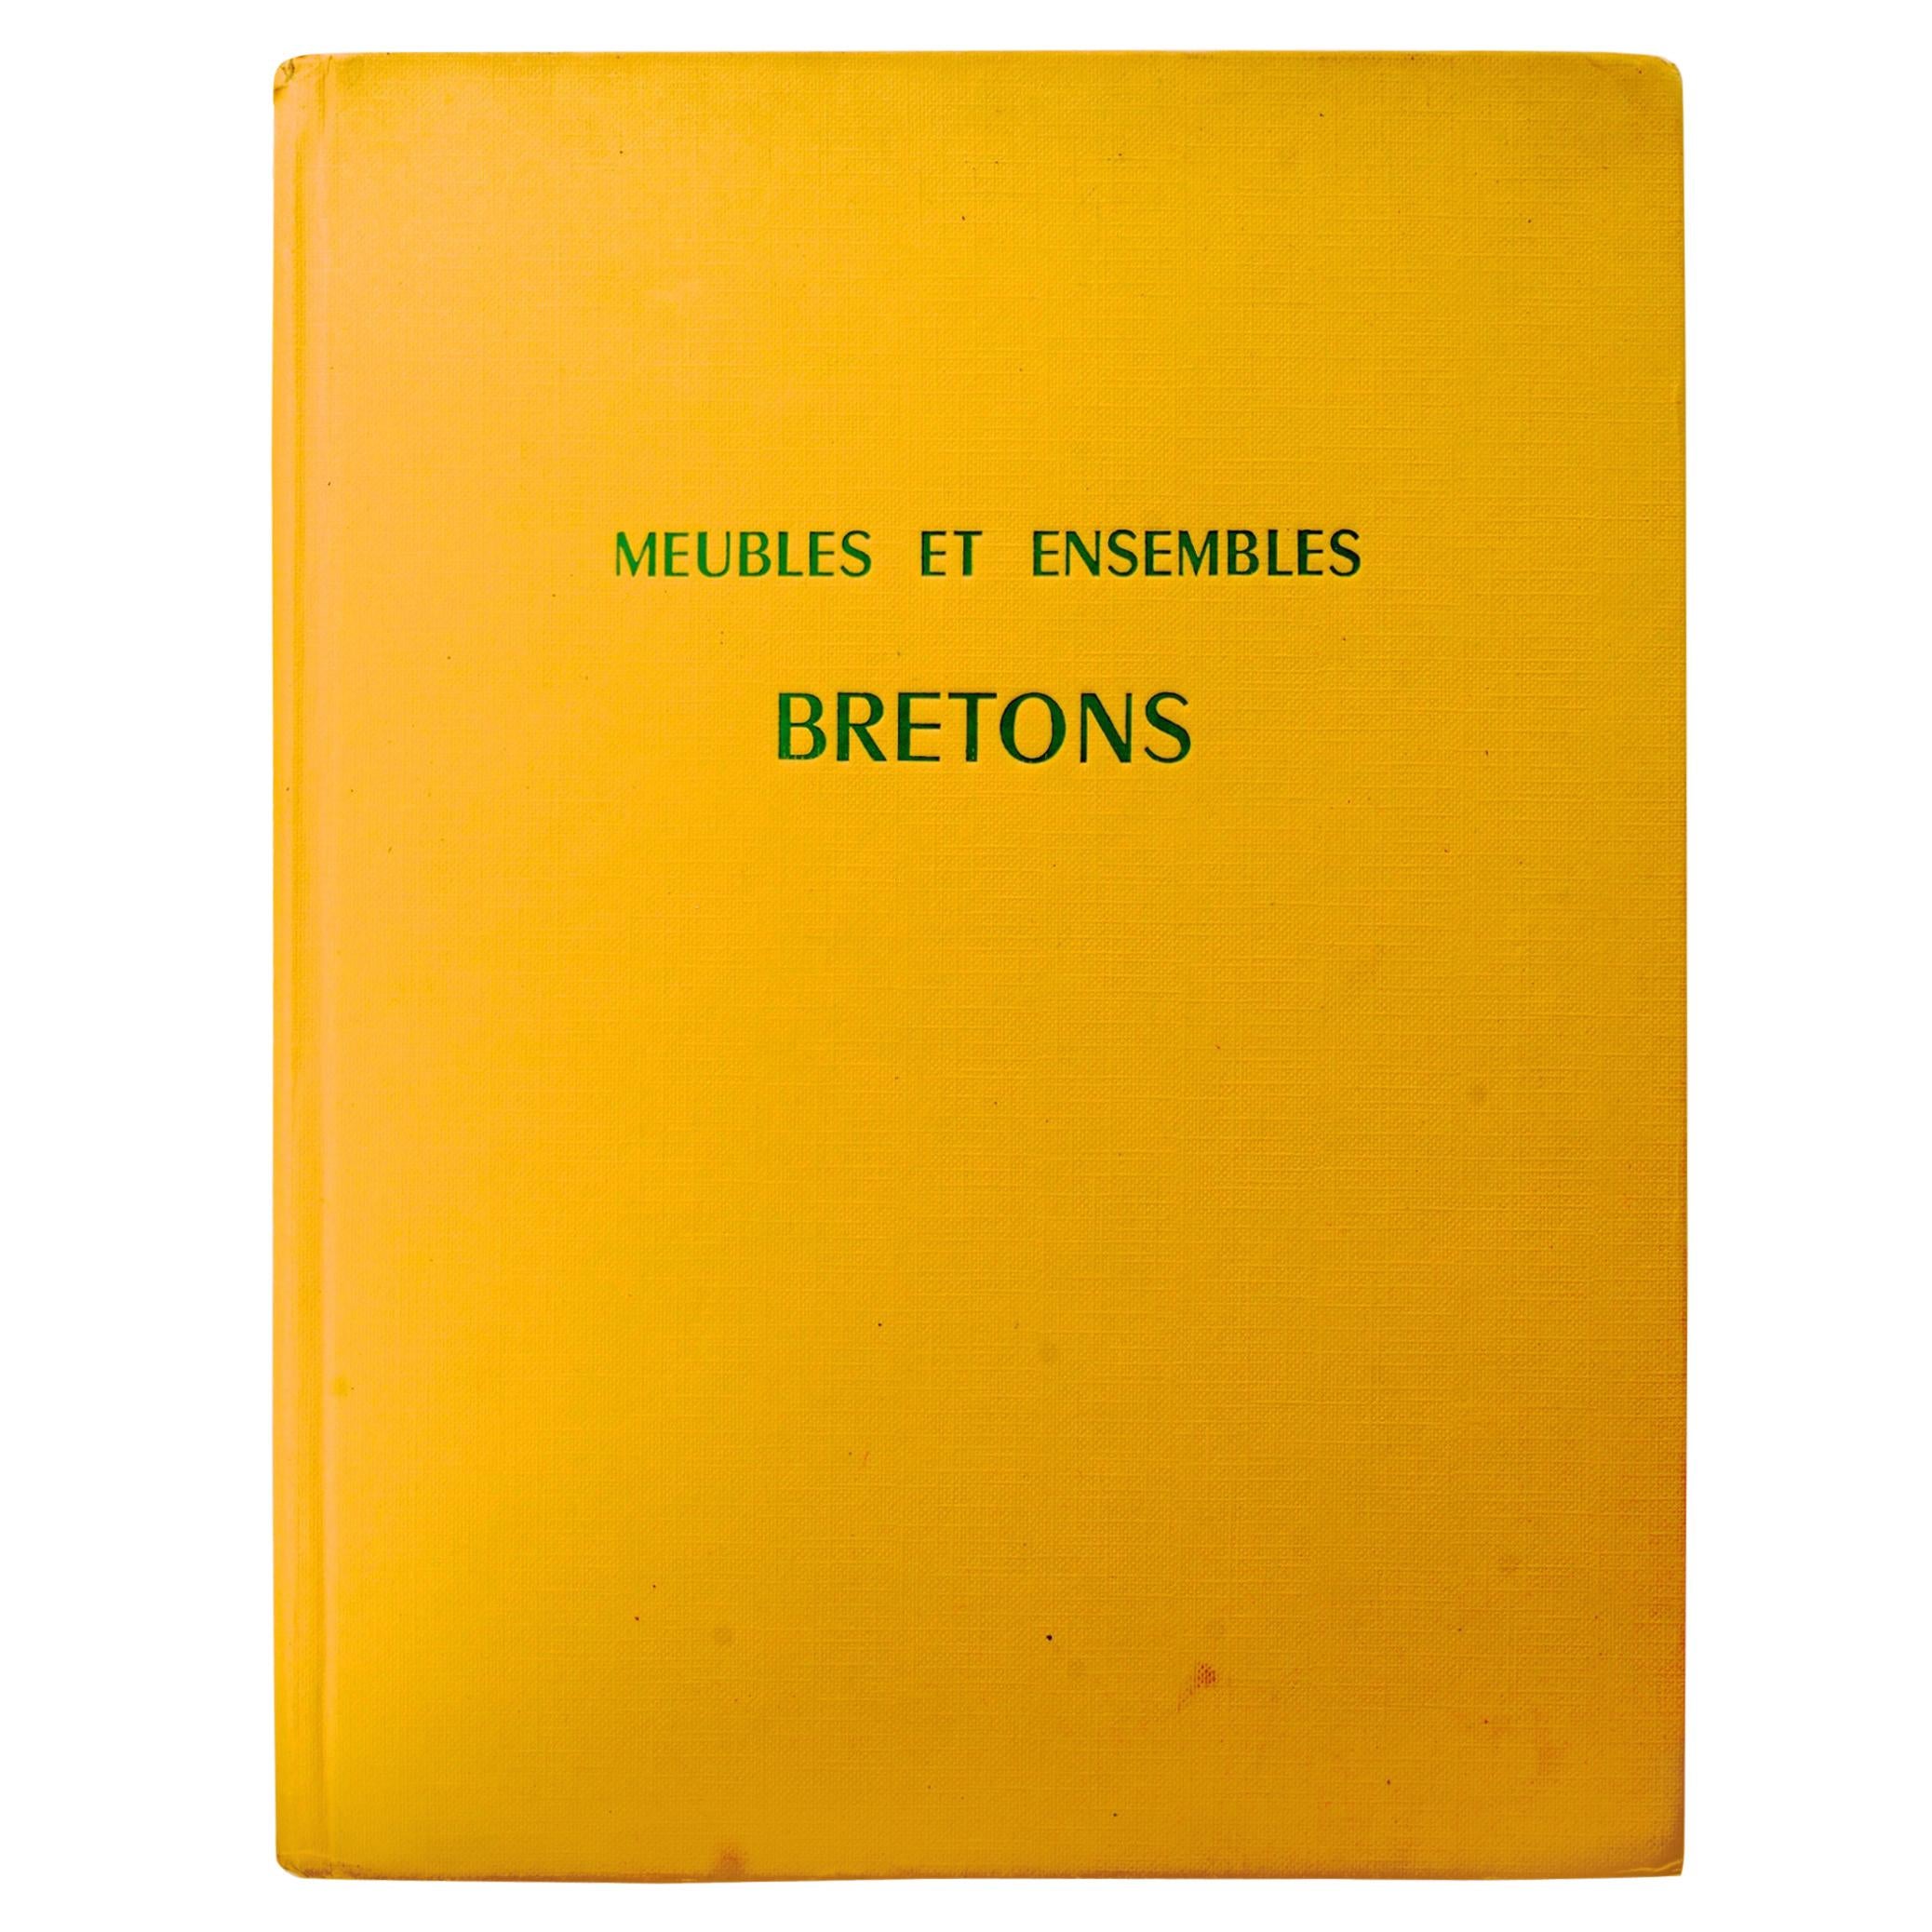 Meubles et ensembles Bretons de Stany Gauthier, première édition